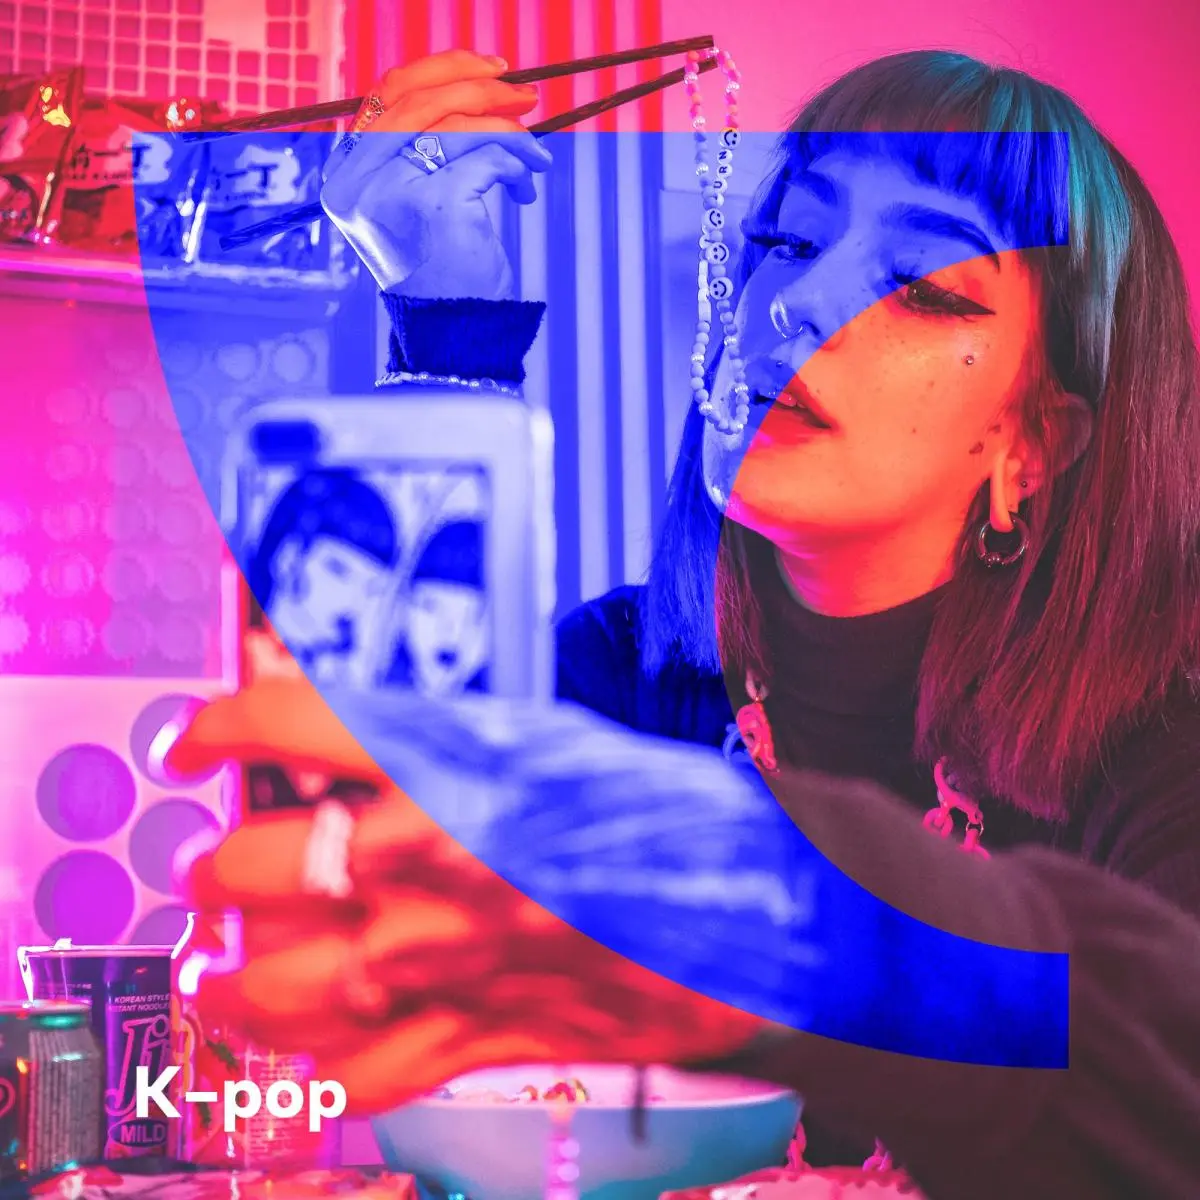 kpop radio polska - Kiedy kpop w Polsce